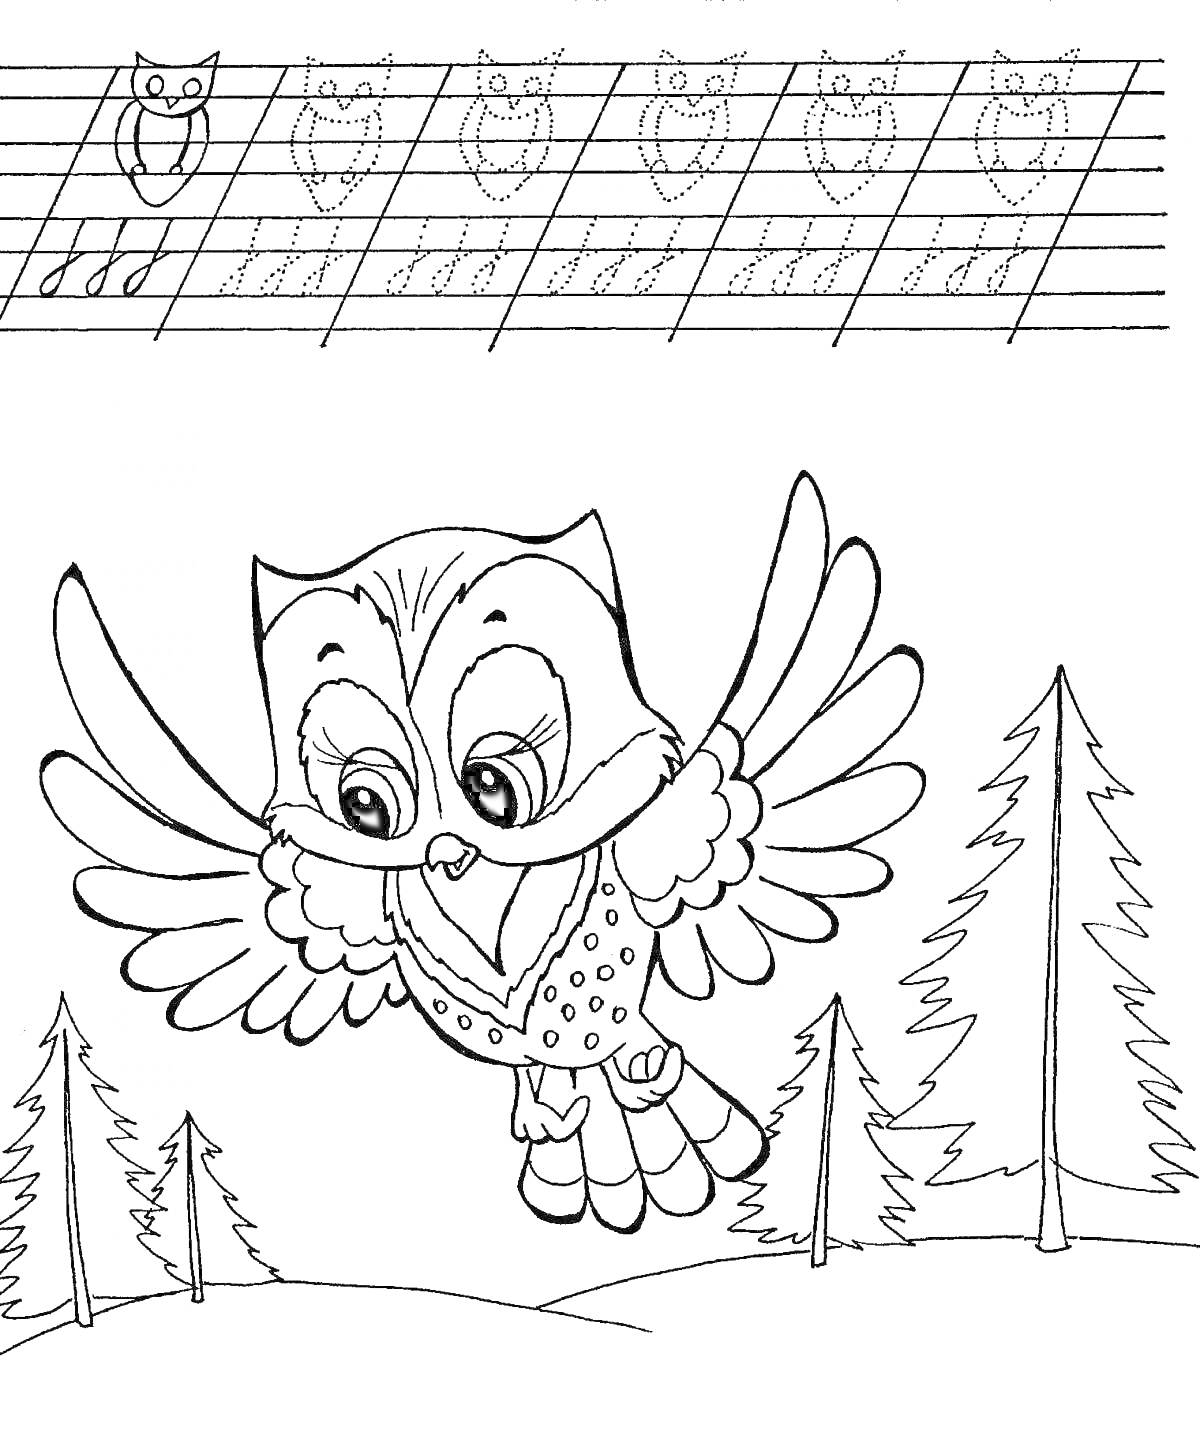 Раскраска Летающая сова на фоне елей с задачей по написанию сов вверху